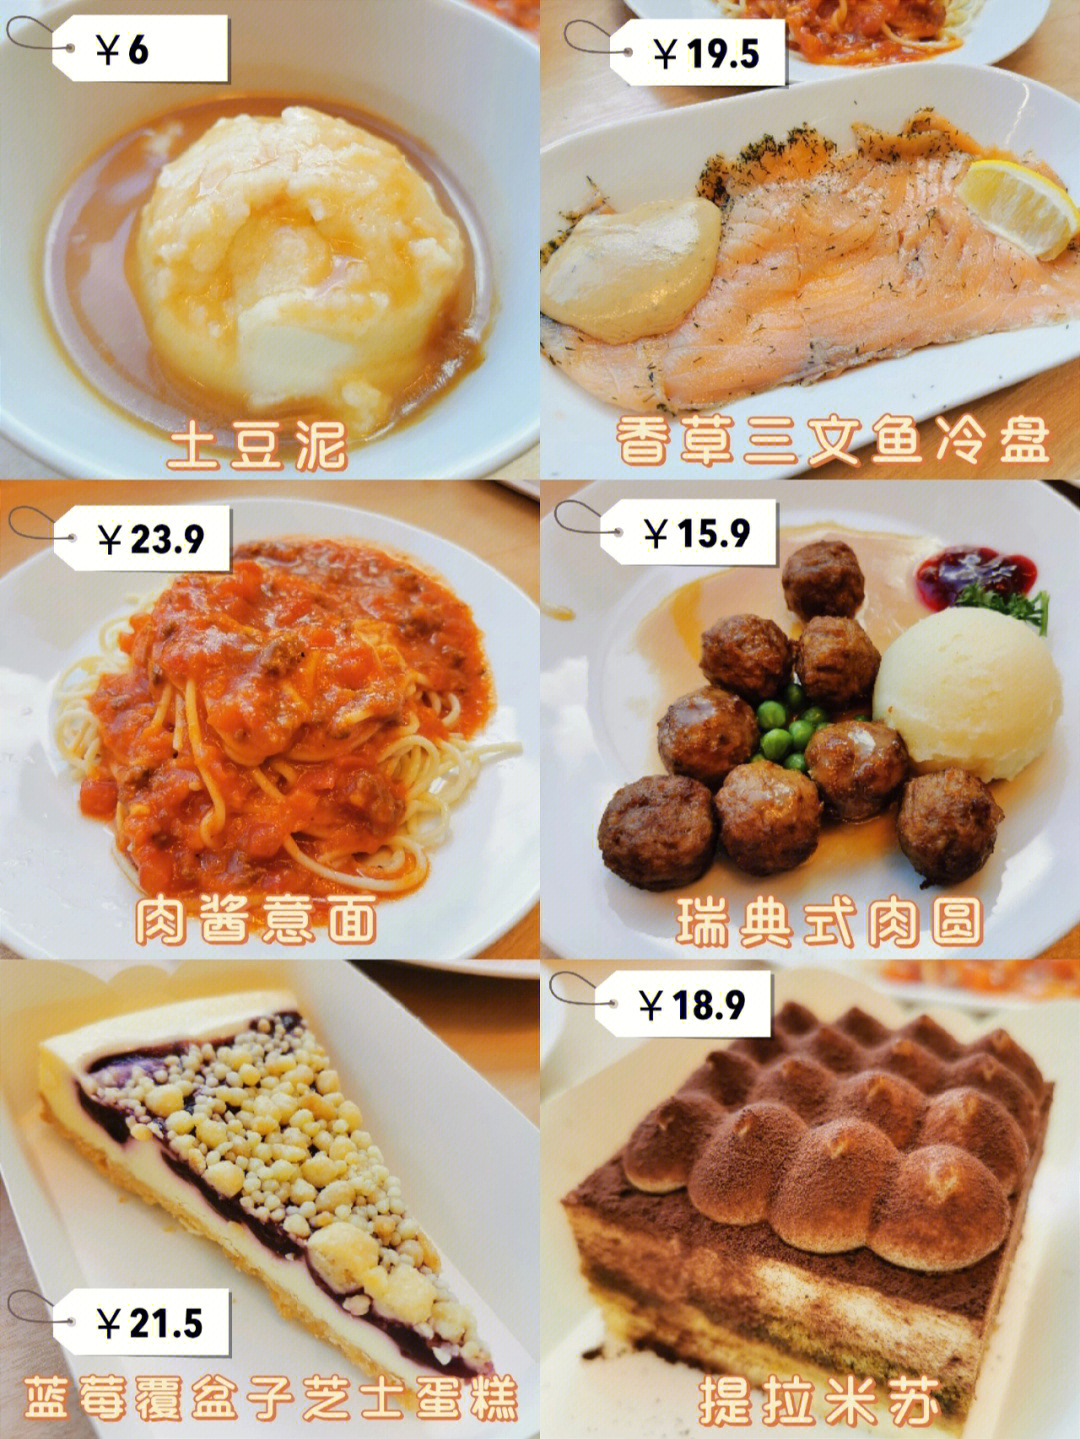 南京宜家餐厅菜单图片